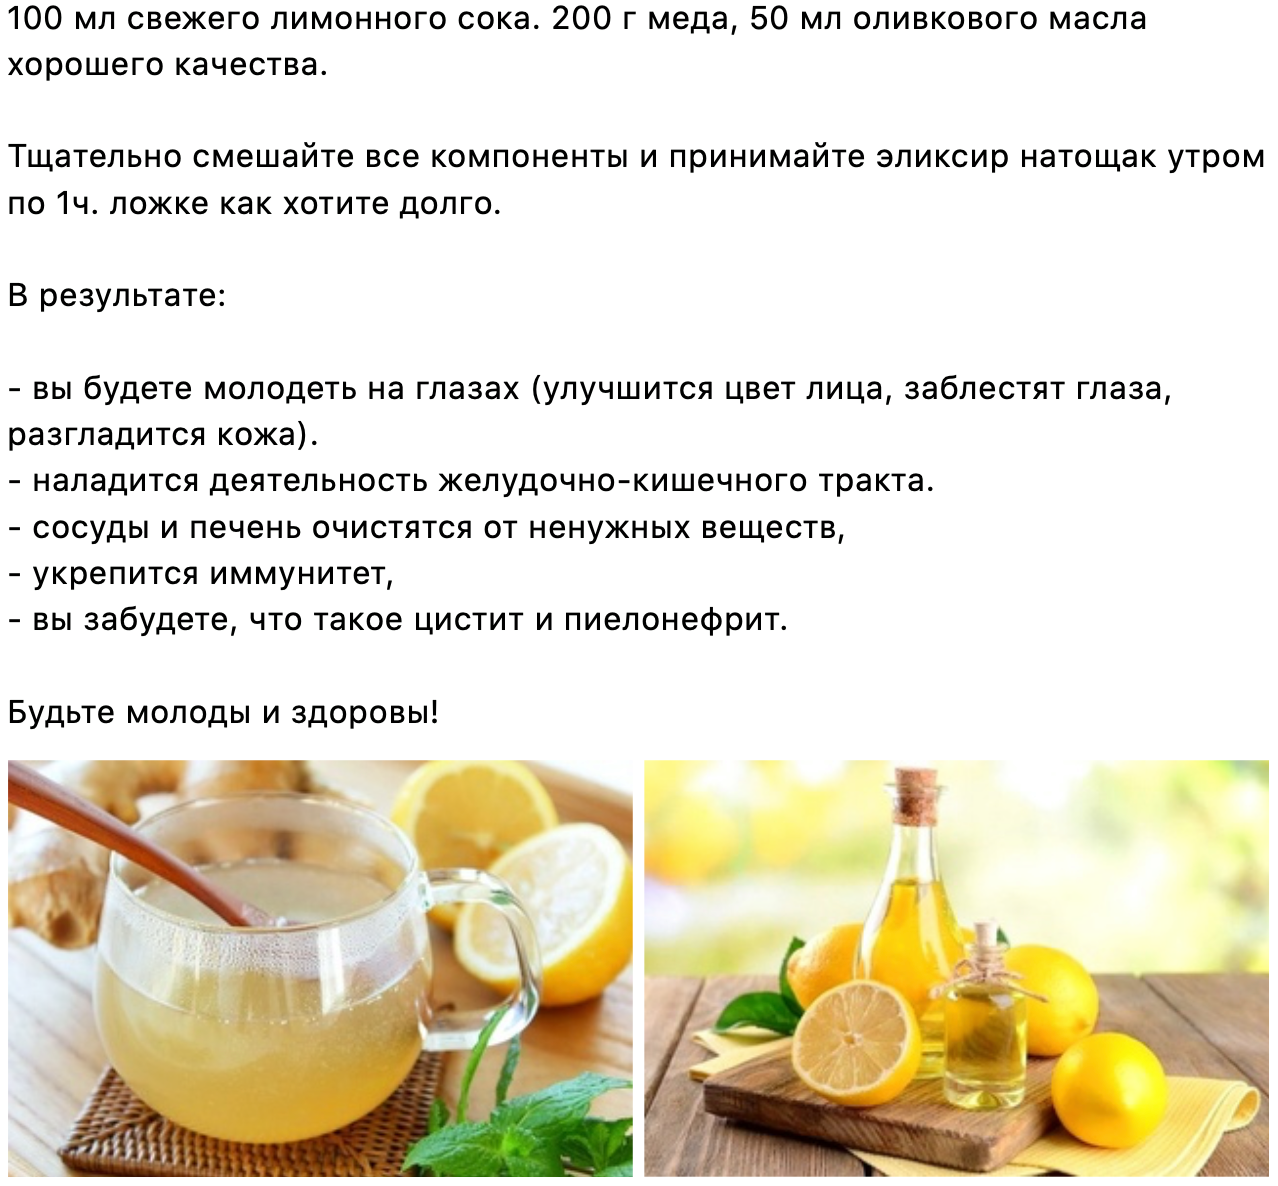 Можно пить лимонный сок